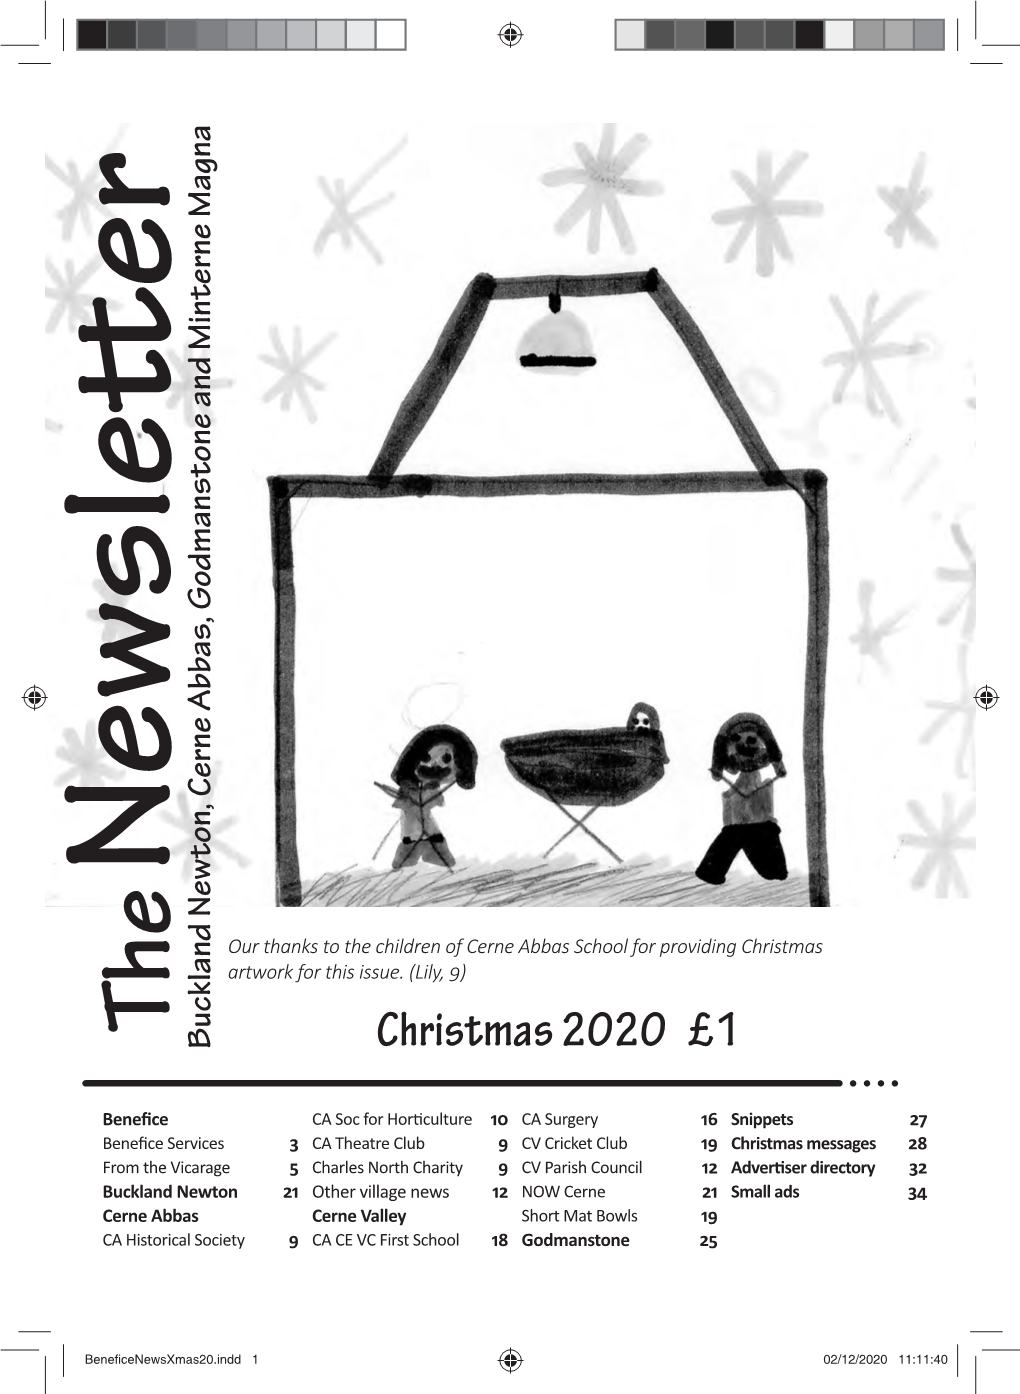 Christmas 2020 £1